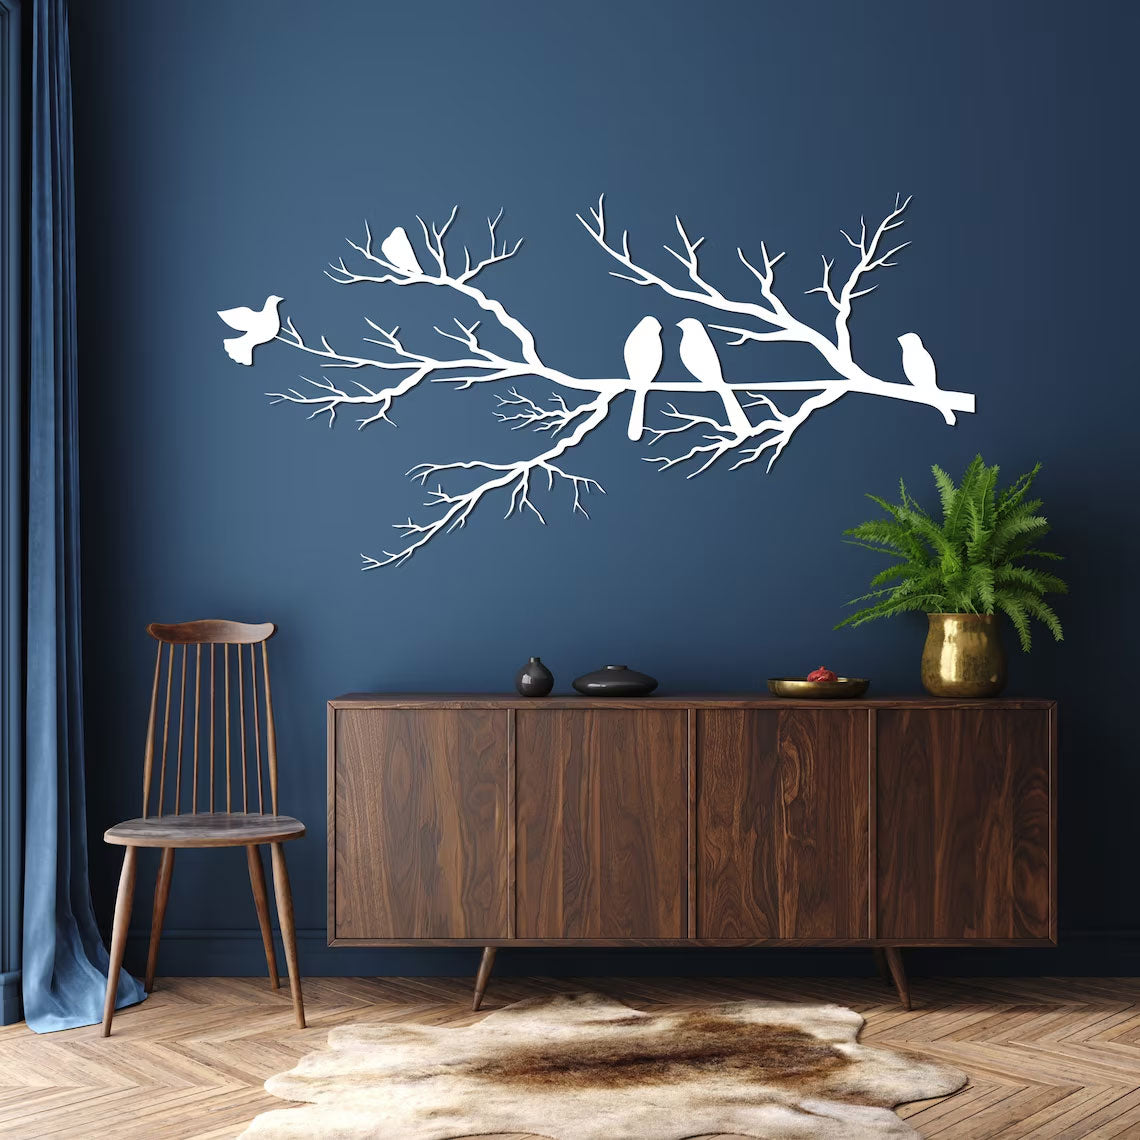 Décoration murale oiseaux sur branche en métal noir 90x16 cm